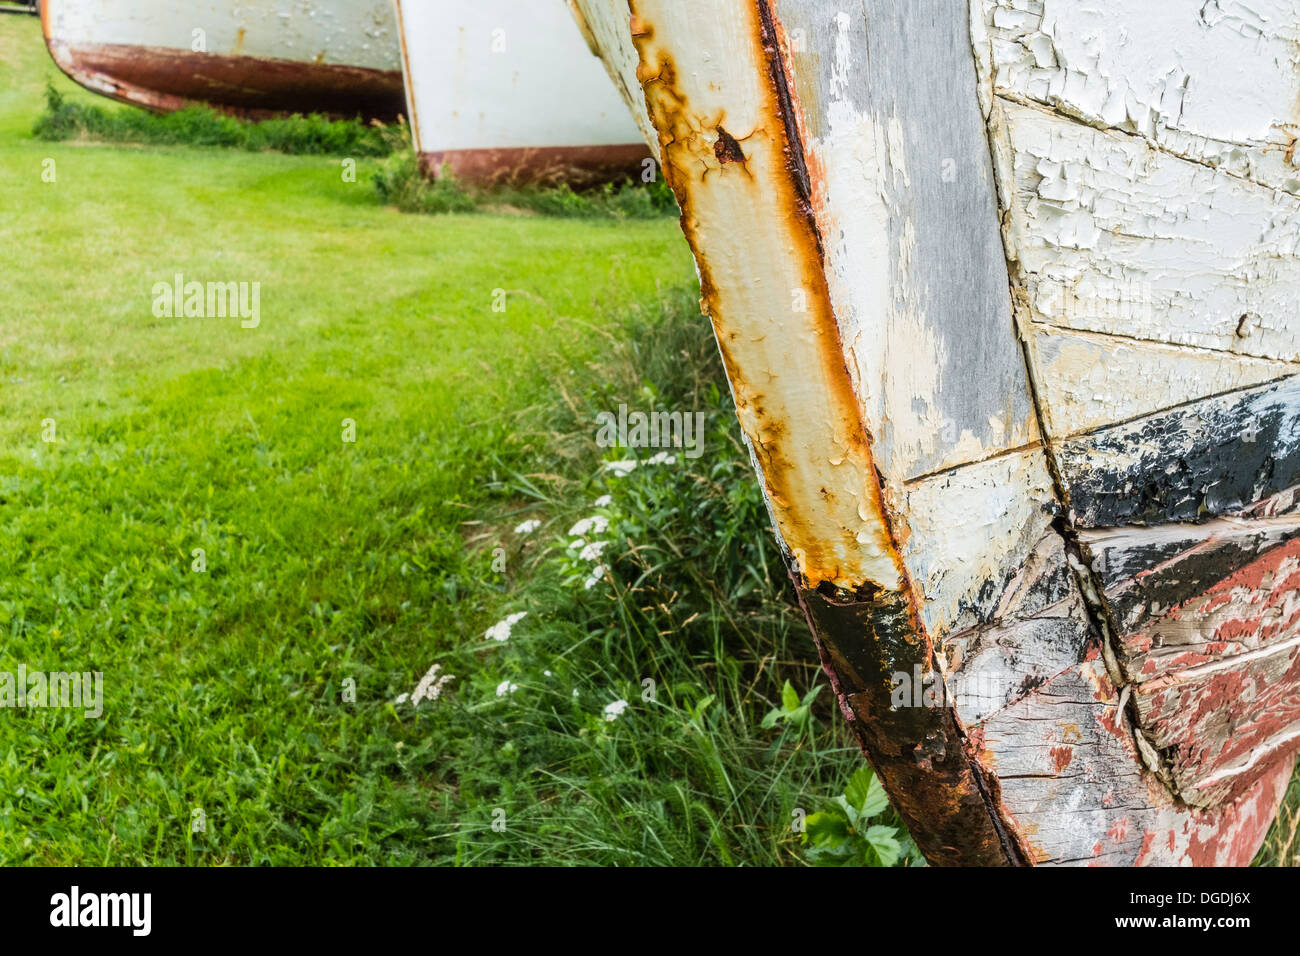 Alten rostigen Angeln Bootsrümpfe aufgereiht auf dem Rasen in einem Zustand des Verfalls, verschlechtert sich auf Prince Edward Island. Stockfoto